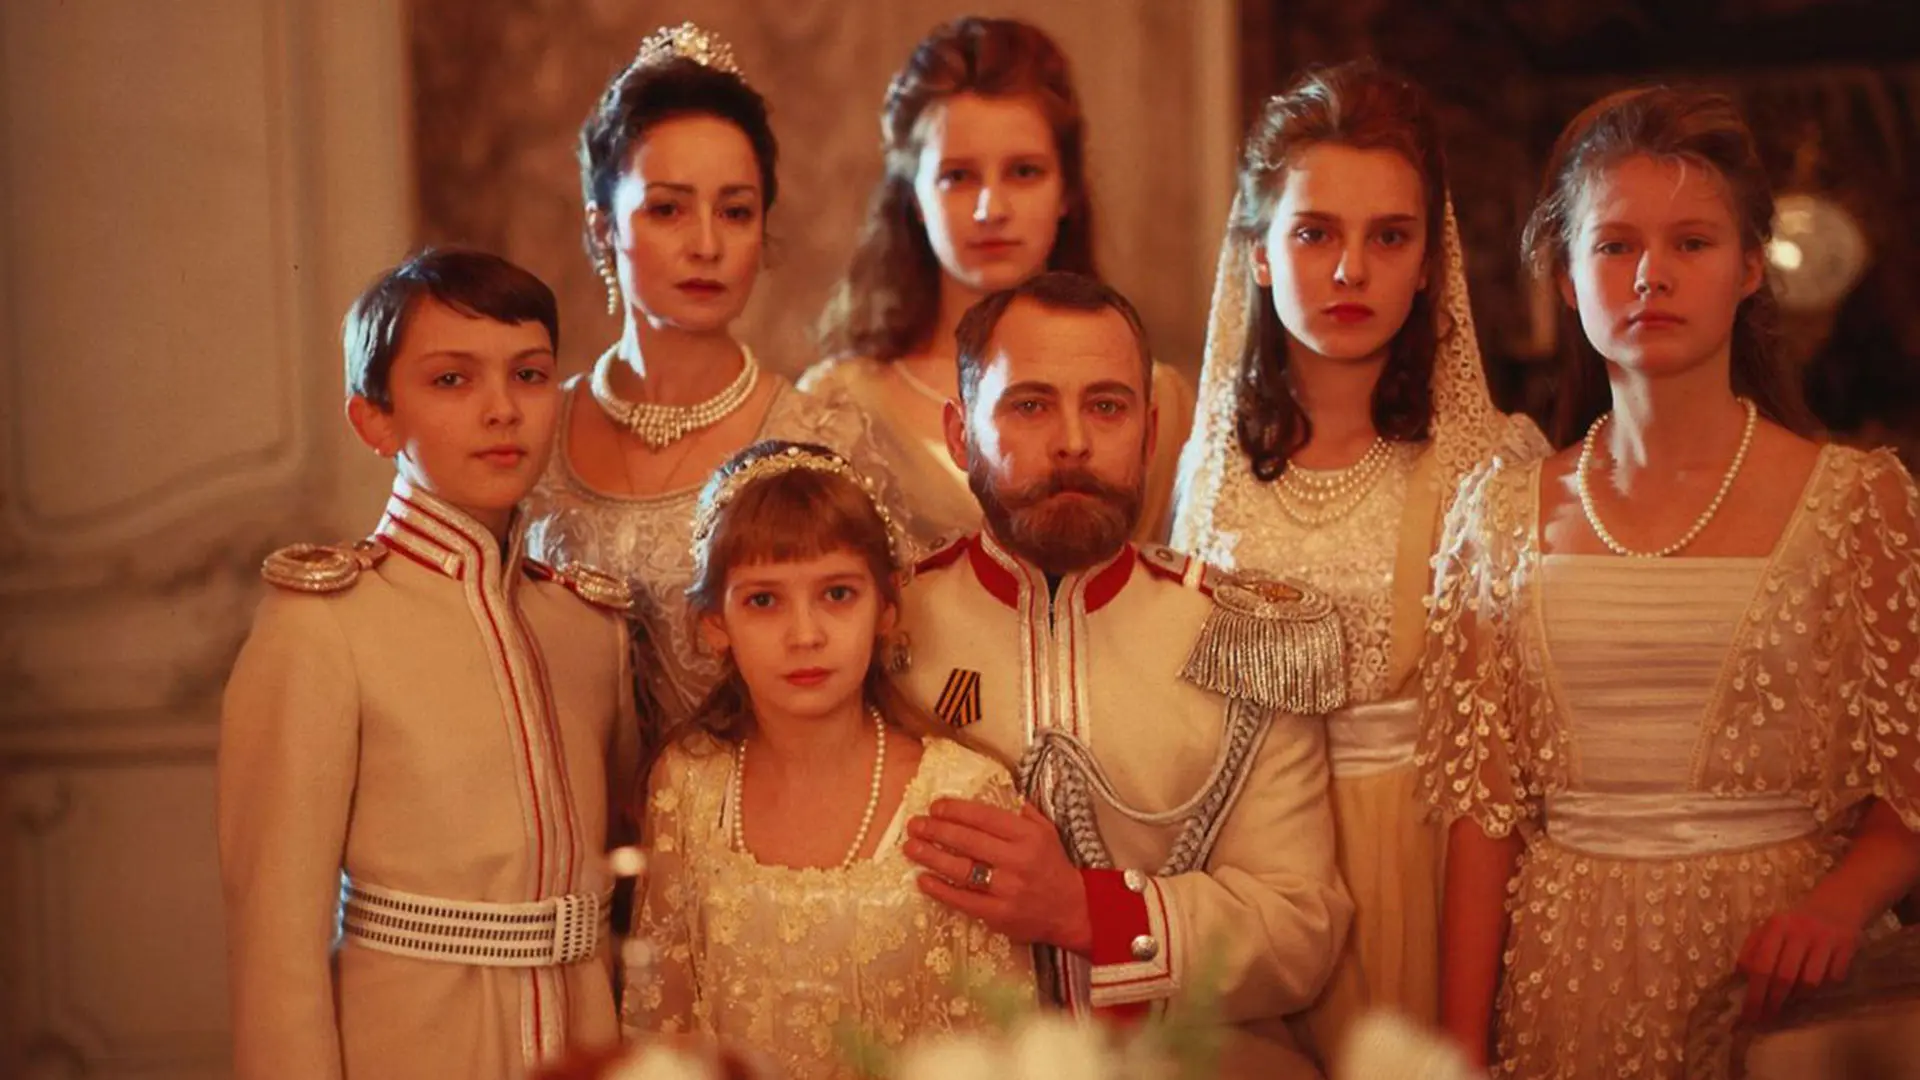 خانواده سلطنتی در فیلم کشتی روسی ۳۰ تا از بهترین فیلم های روسی بهمراه امتیاز IMDB ایتی مایتی